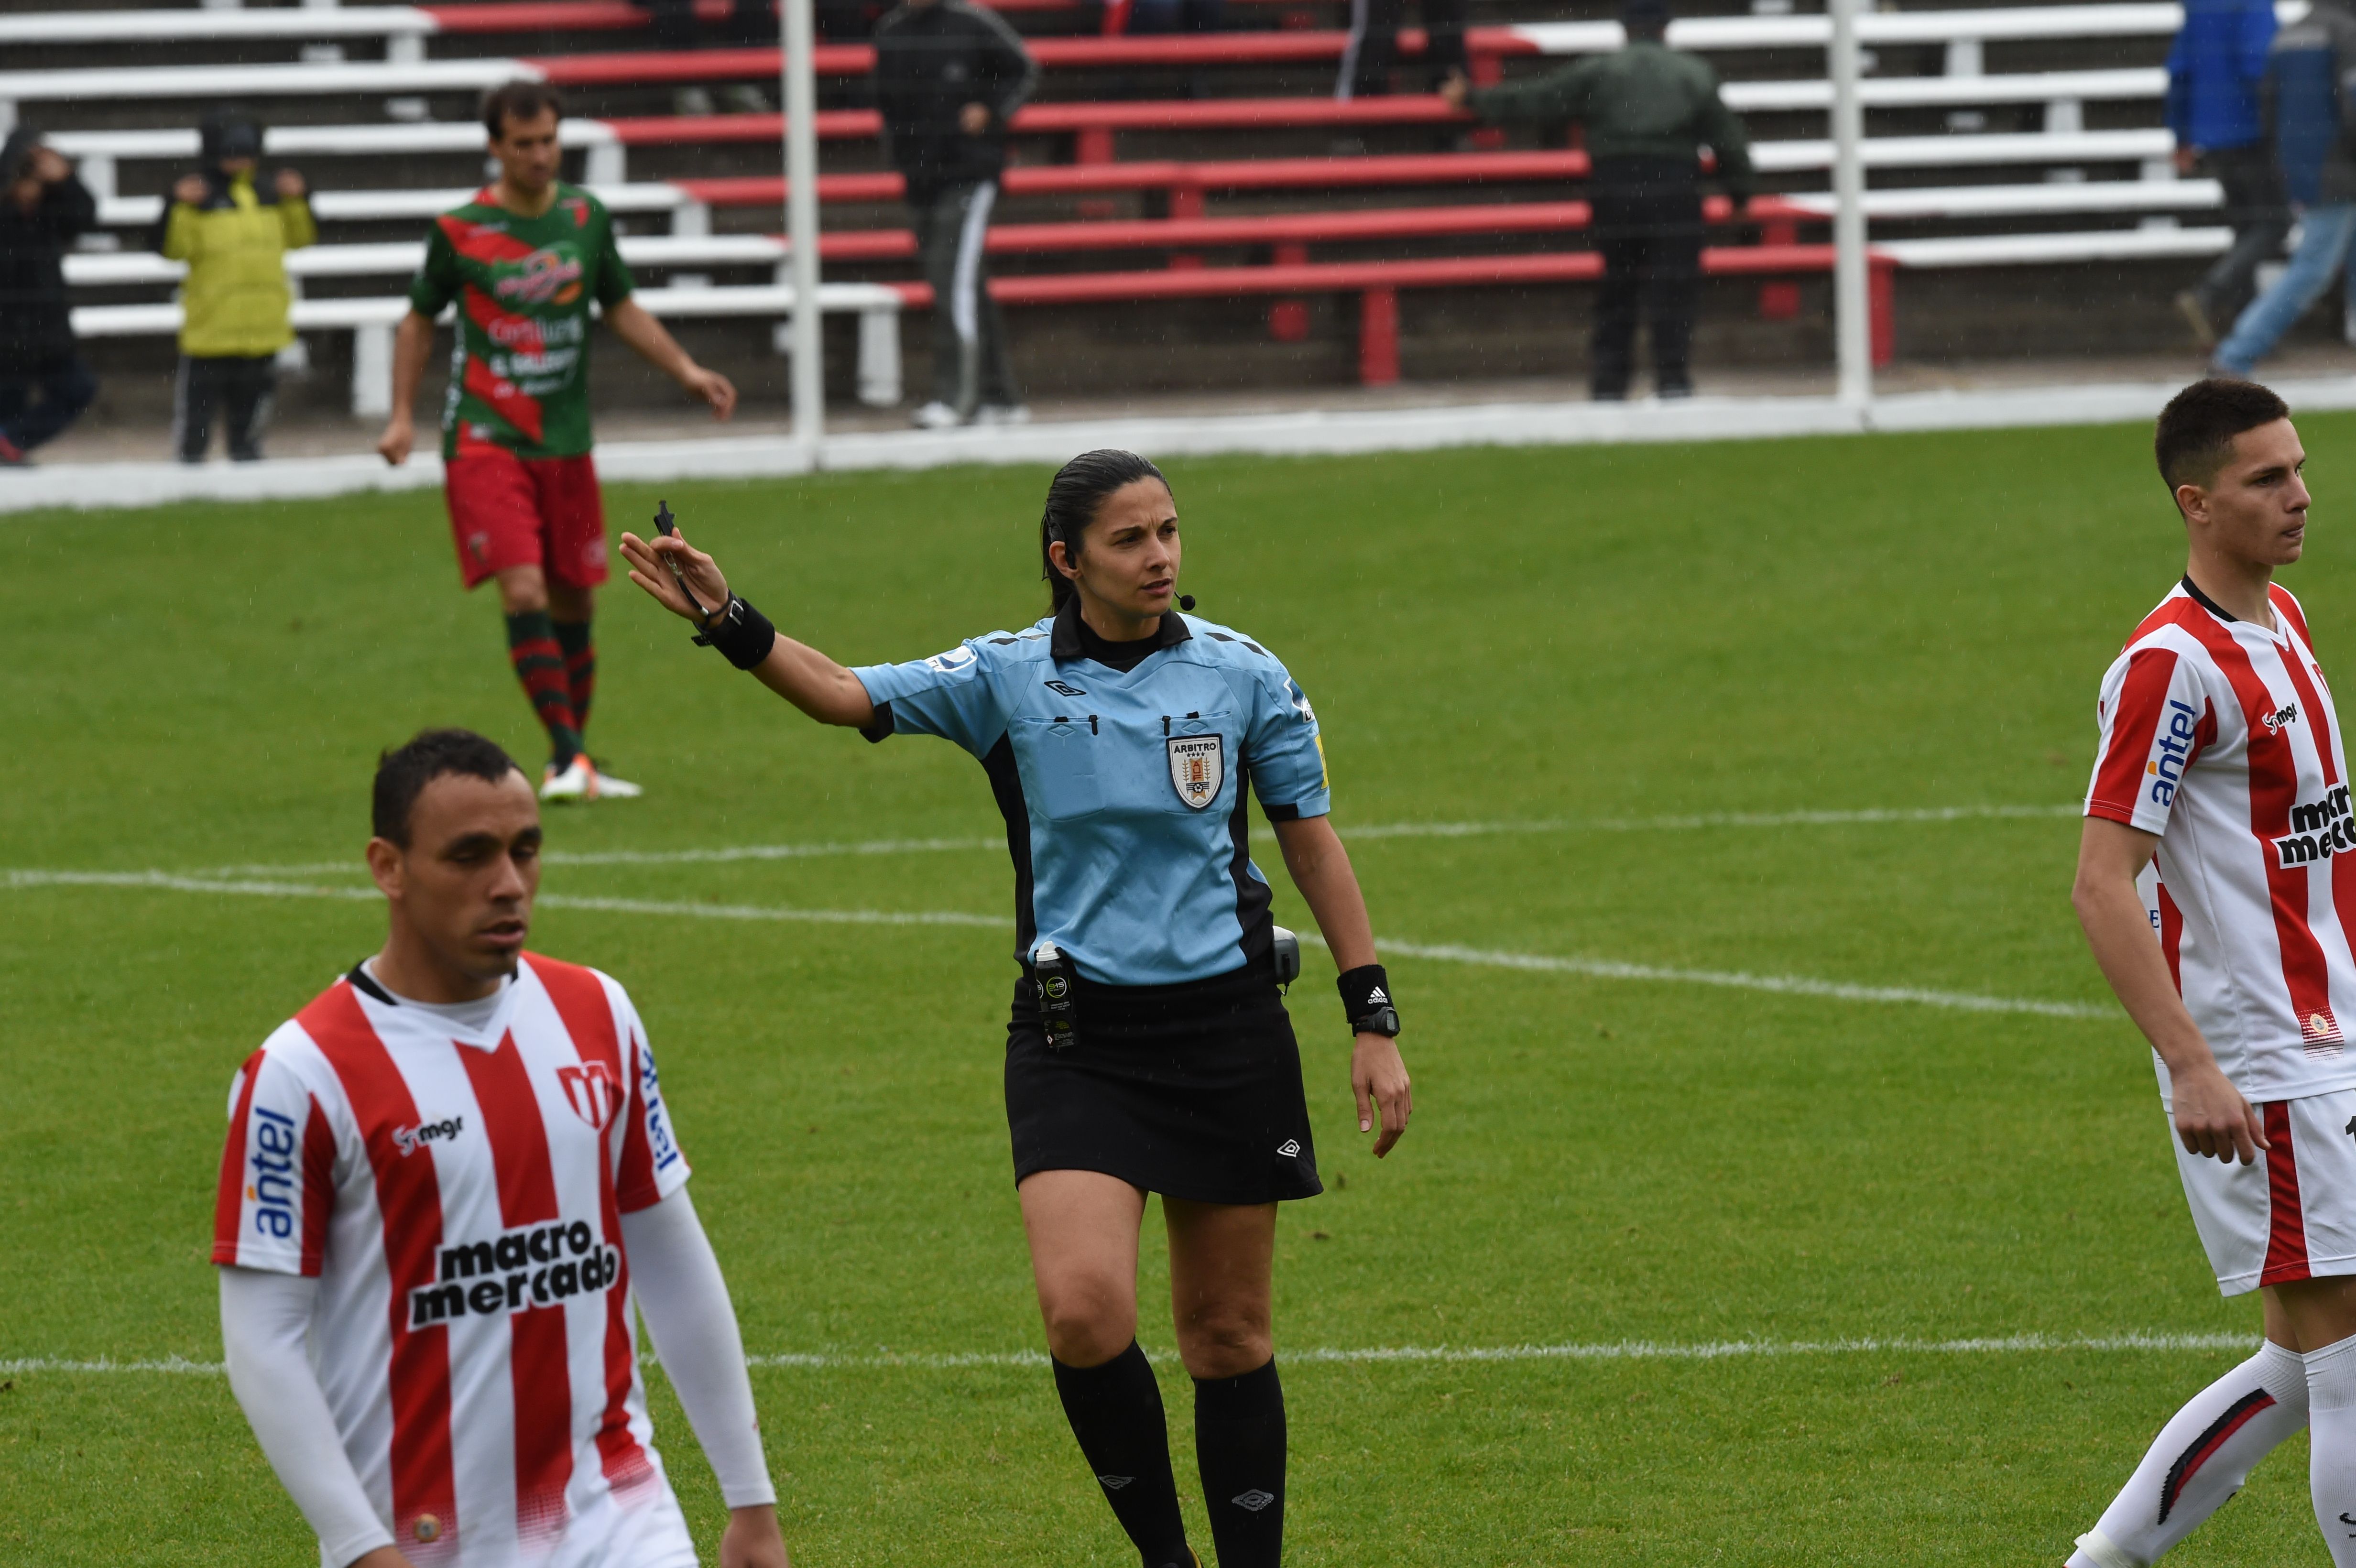 Otra mujer debuta como árbitra central en el fútbol de Primera División  Profesional uruguayo masculino; conocé su historia